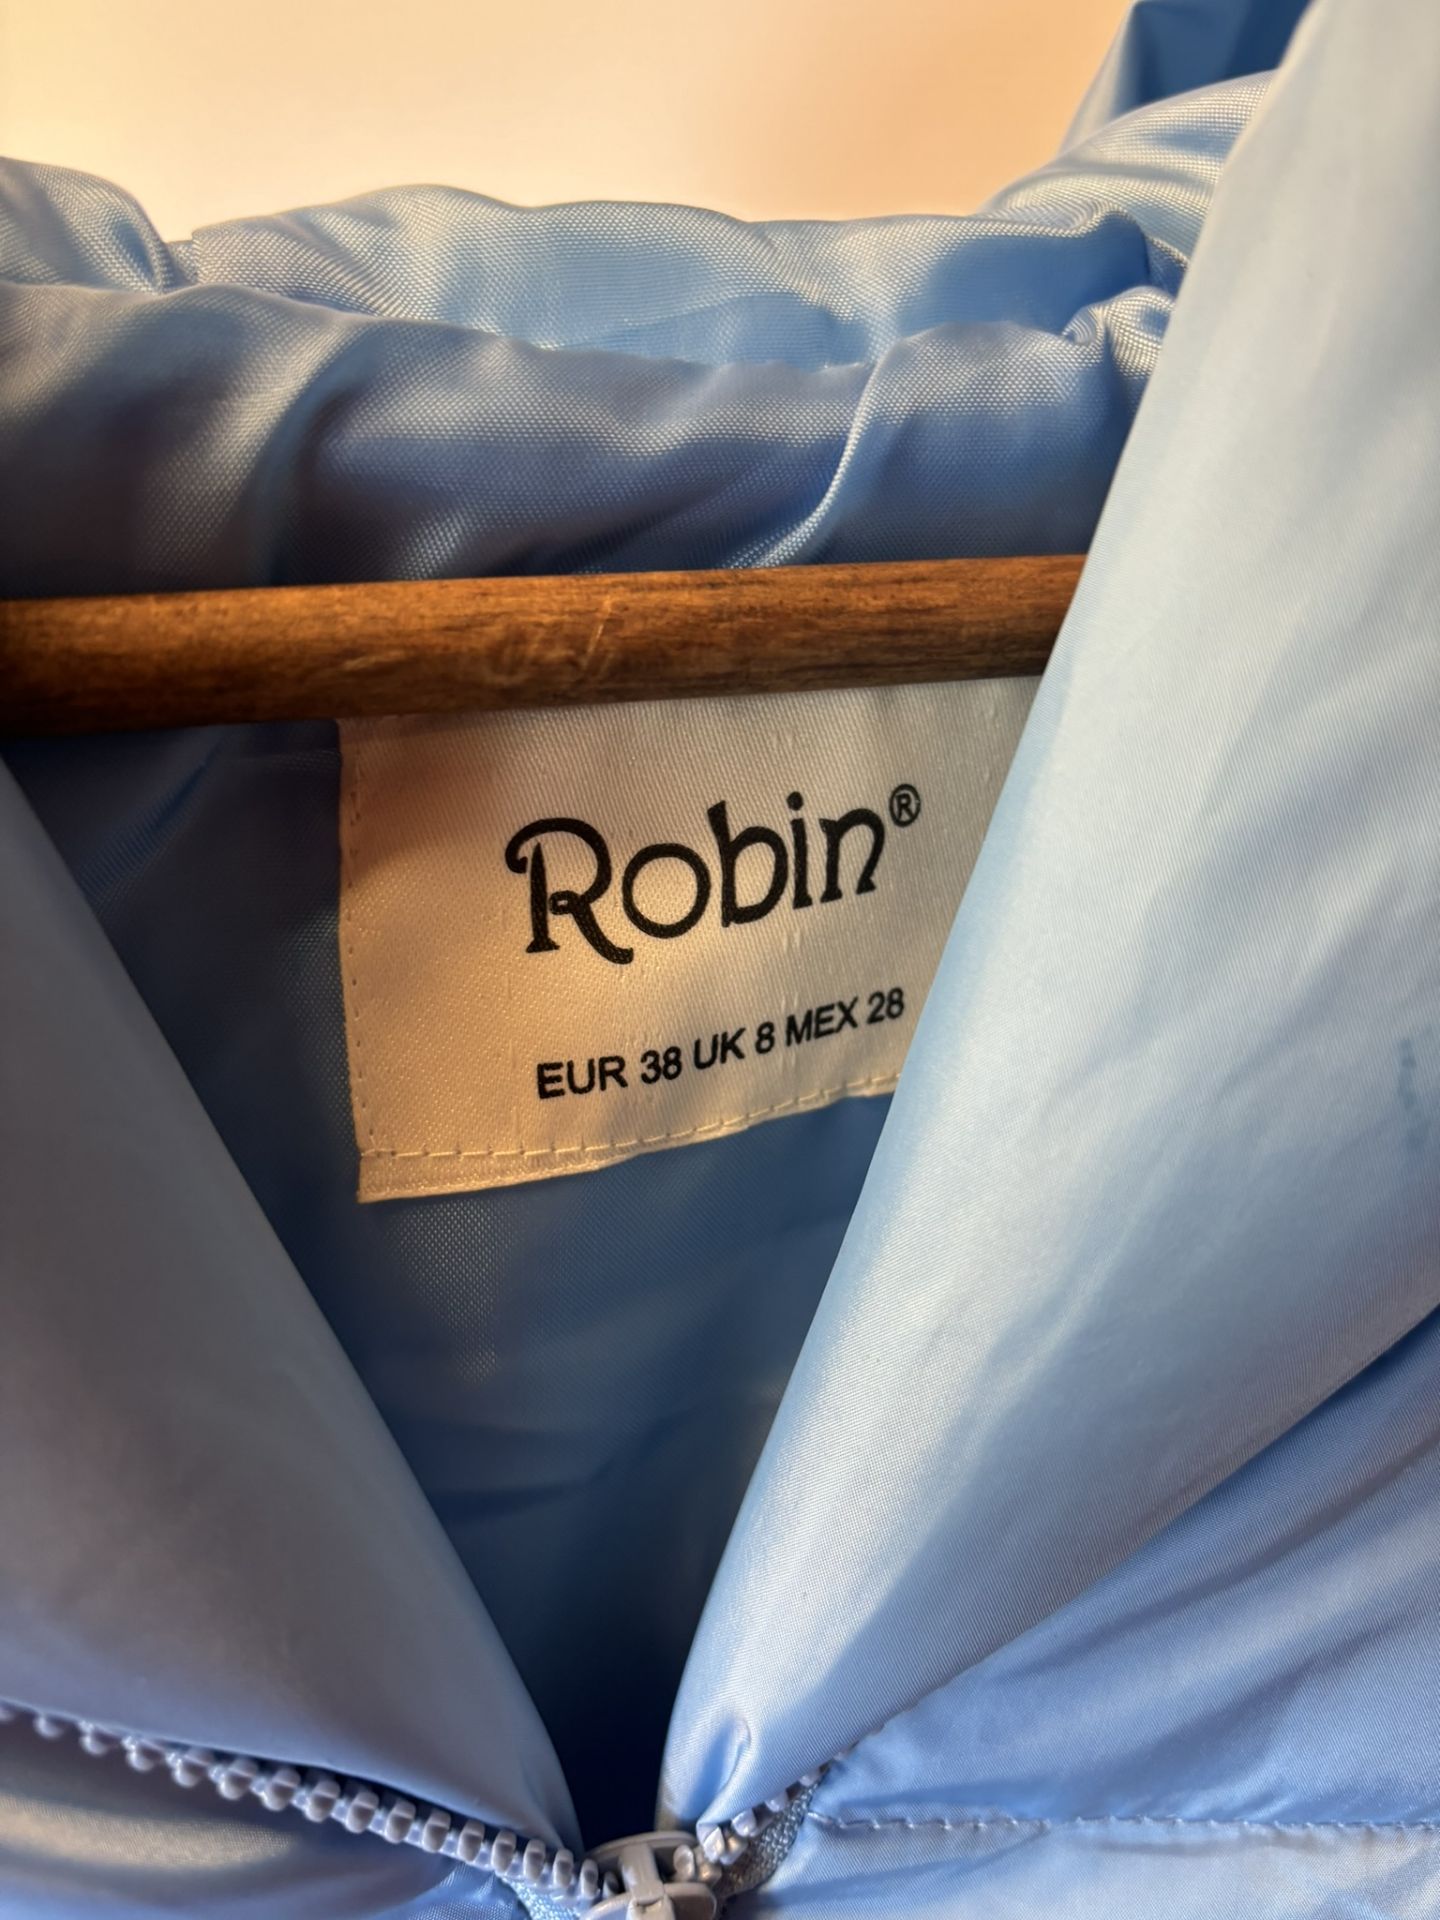 Robin Medium Light Blue Short Vest With Hood, size UK8/EUR 38 - Image 3 of 6